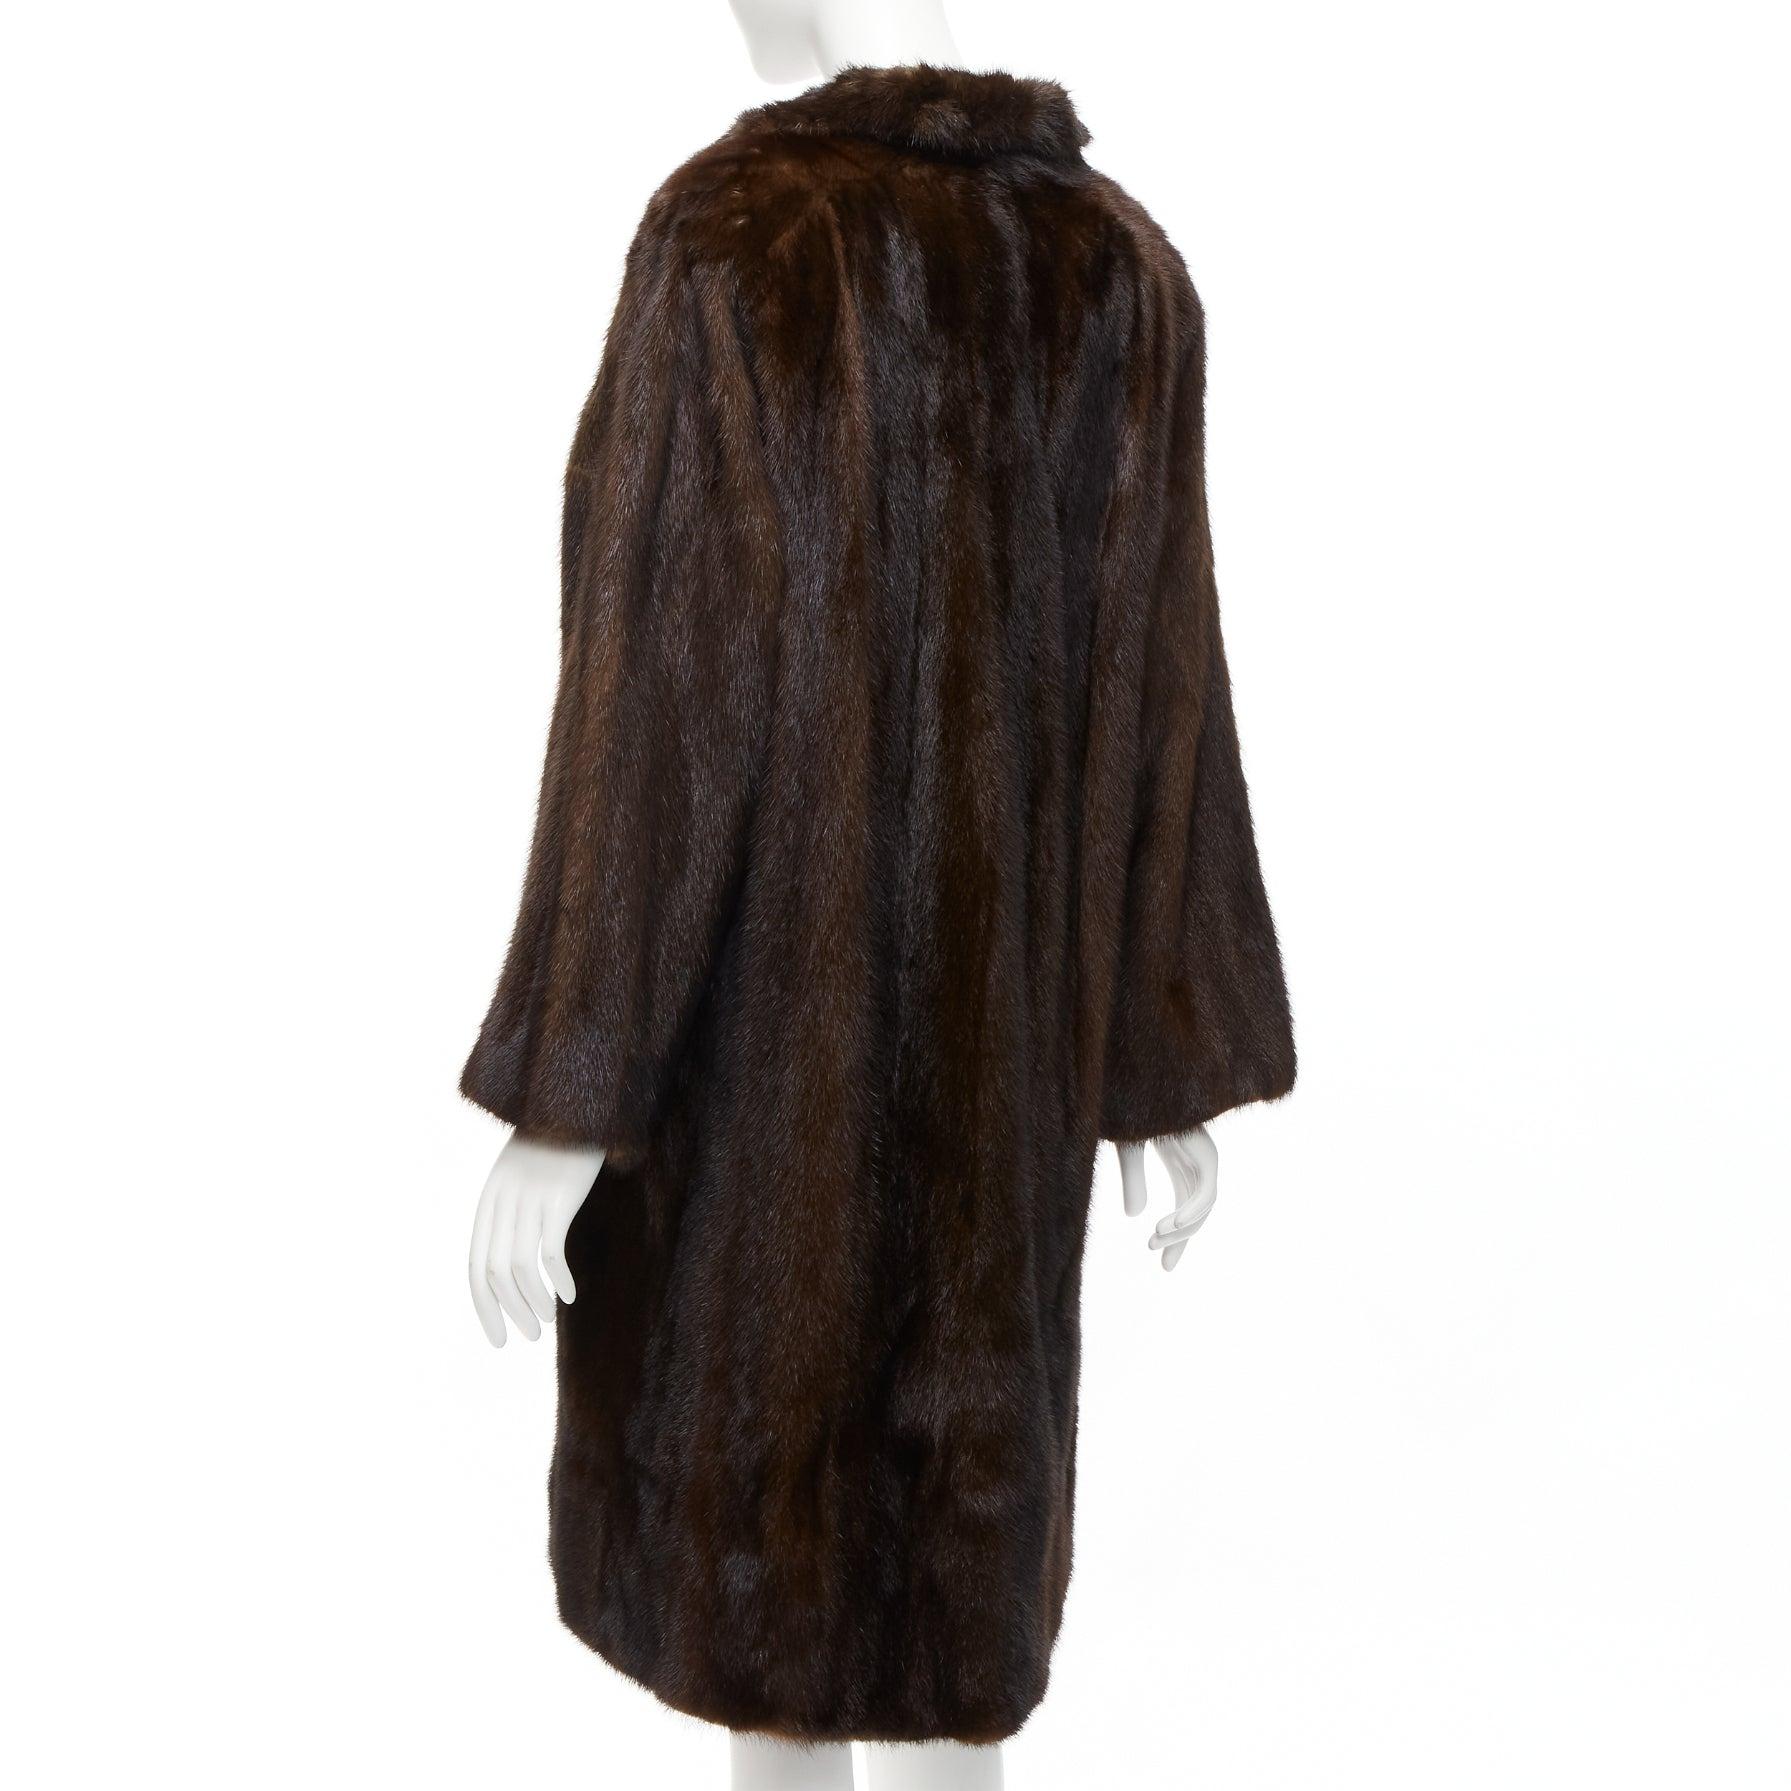 UNLABELLED dark brown genuine fur tie collar longline long sleeve jacket coat For Sale 2